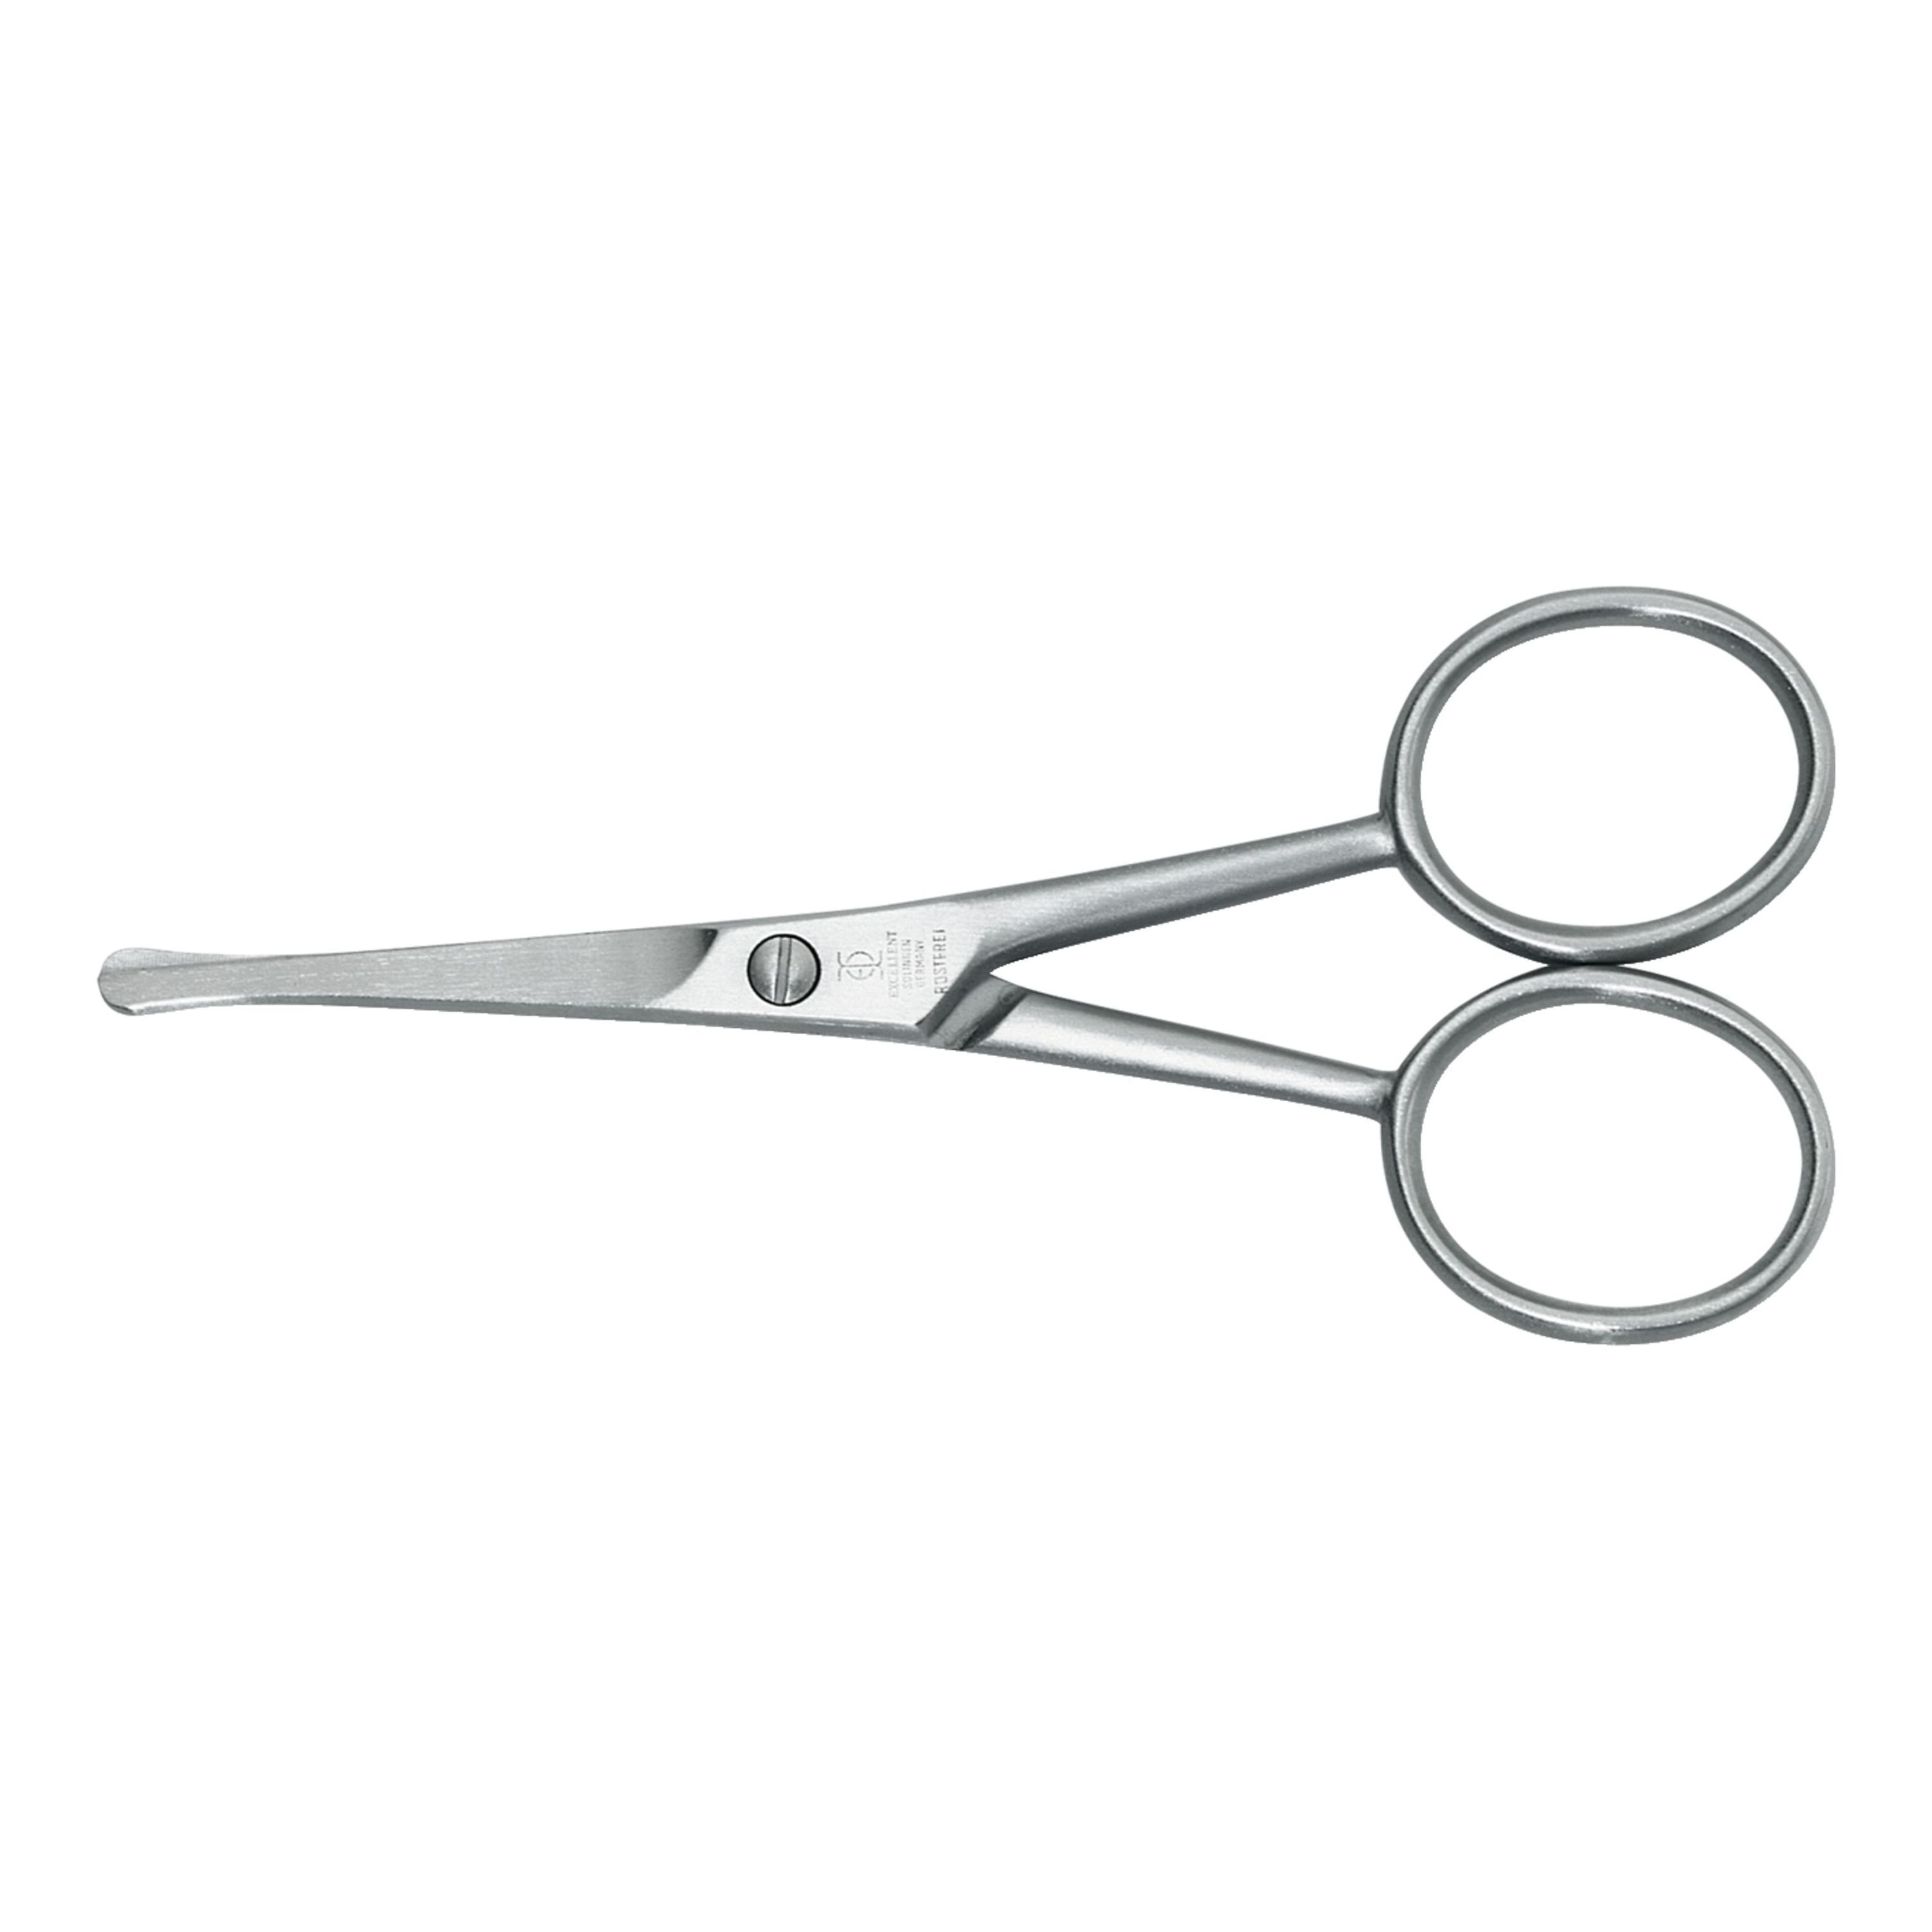 trimmer scissors hair